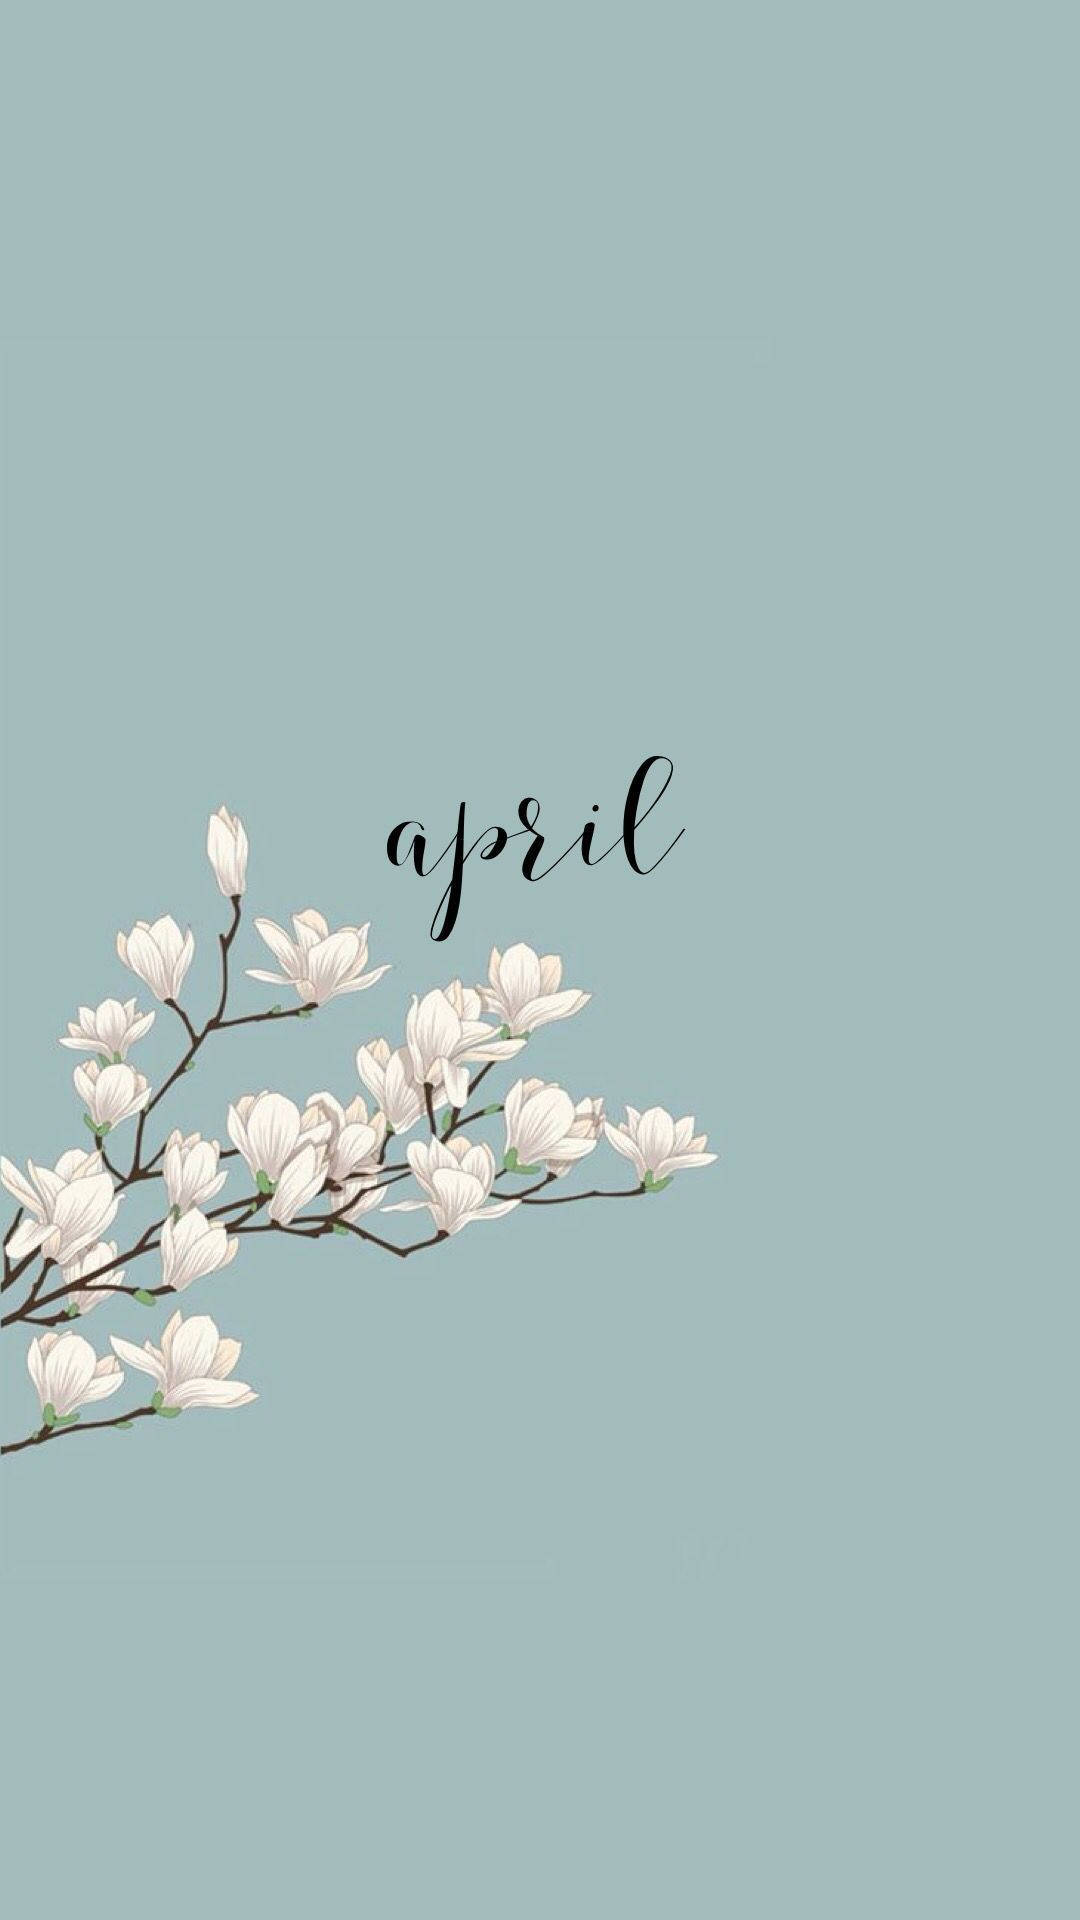 Download Cute April Spring Wallpaper 